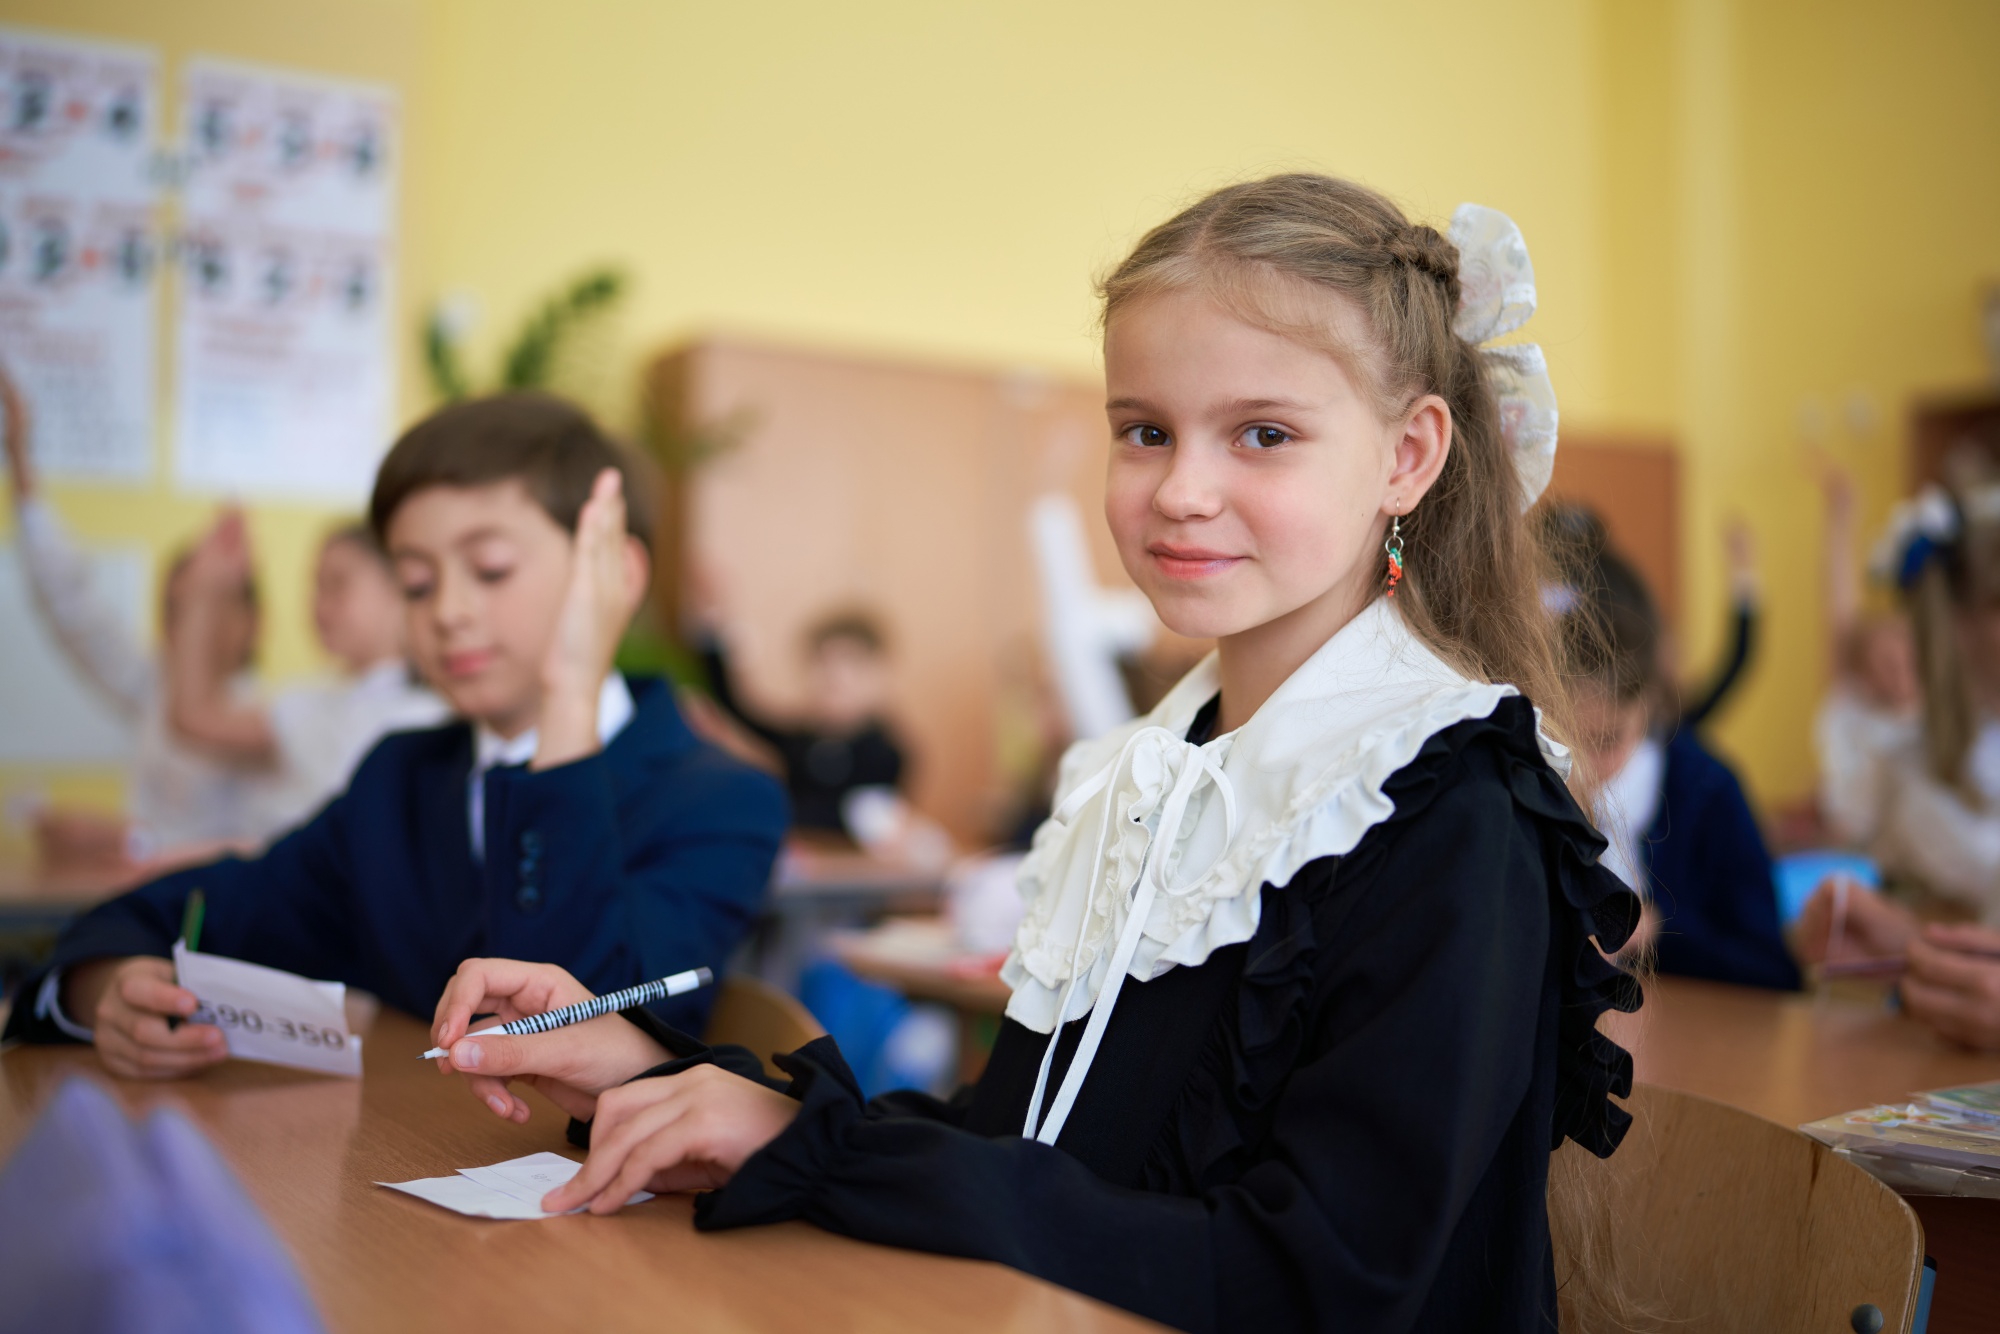 Сергей Кравцов: «У России есть уникальные возможности построить суверенную систему образования».